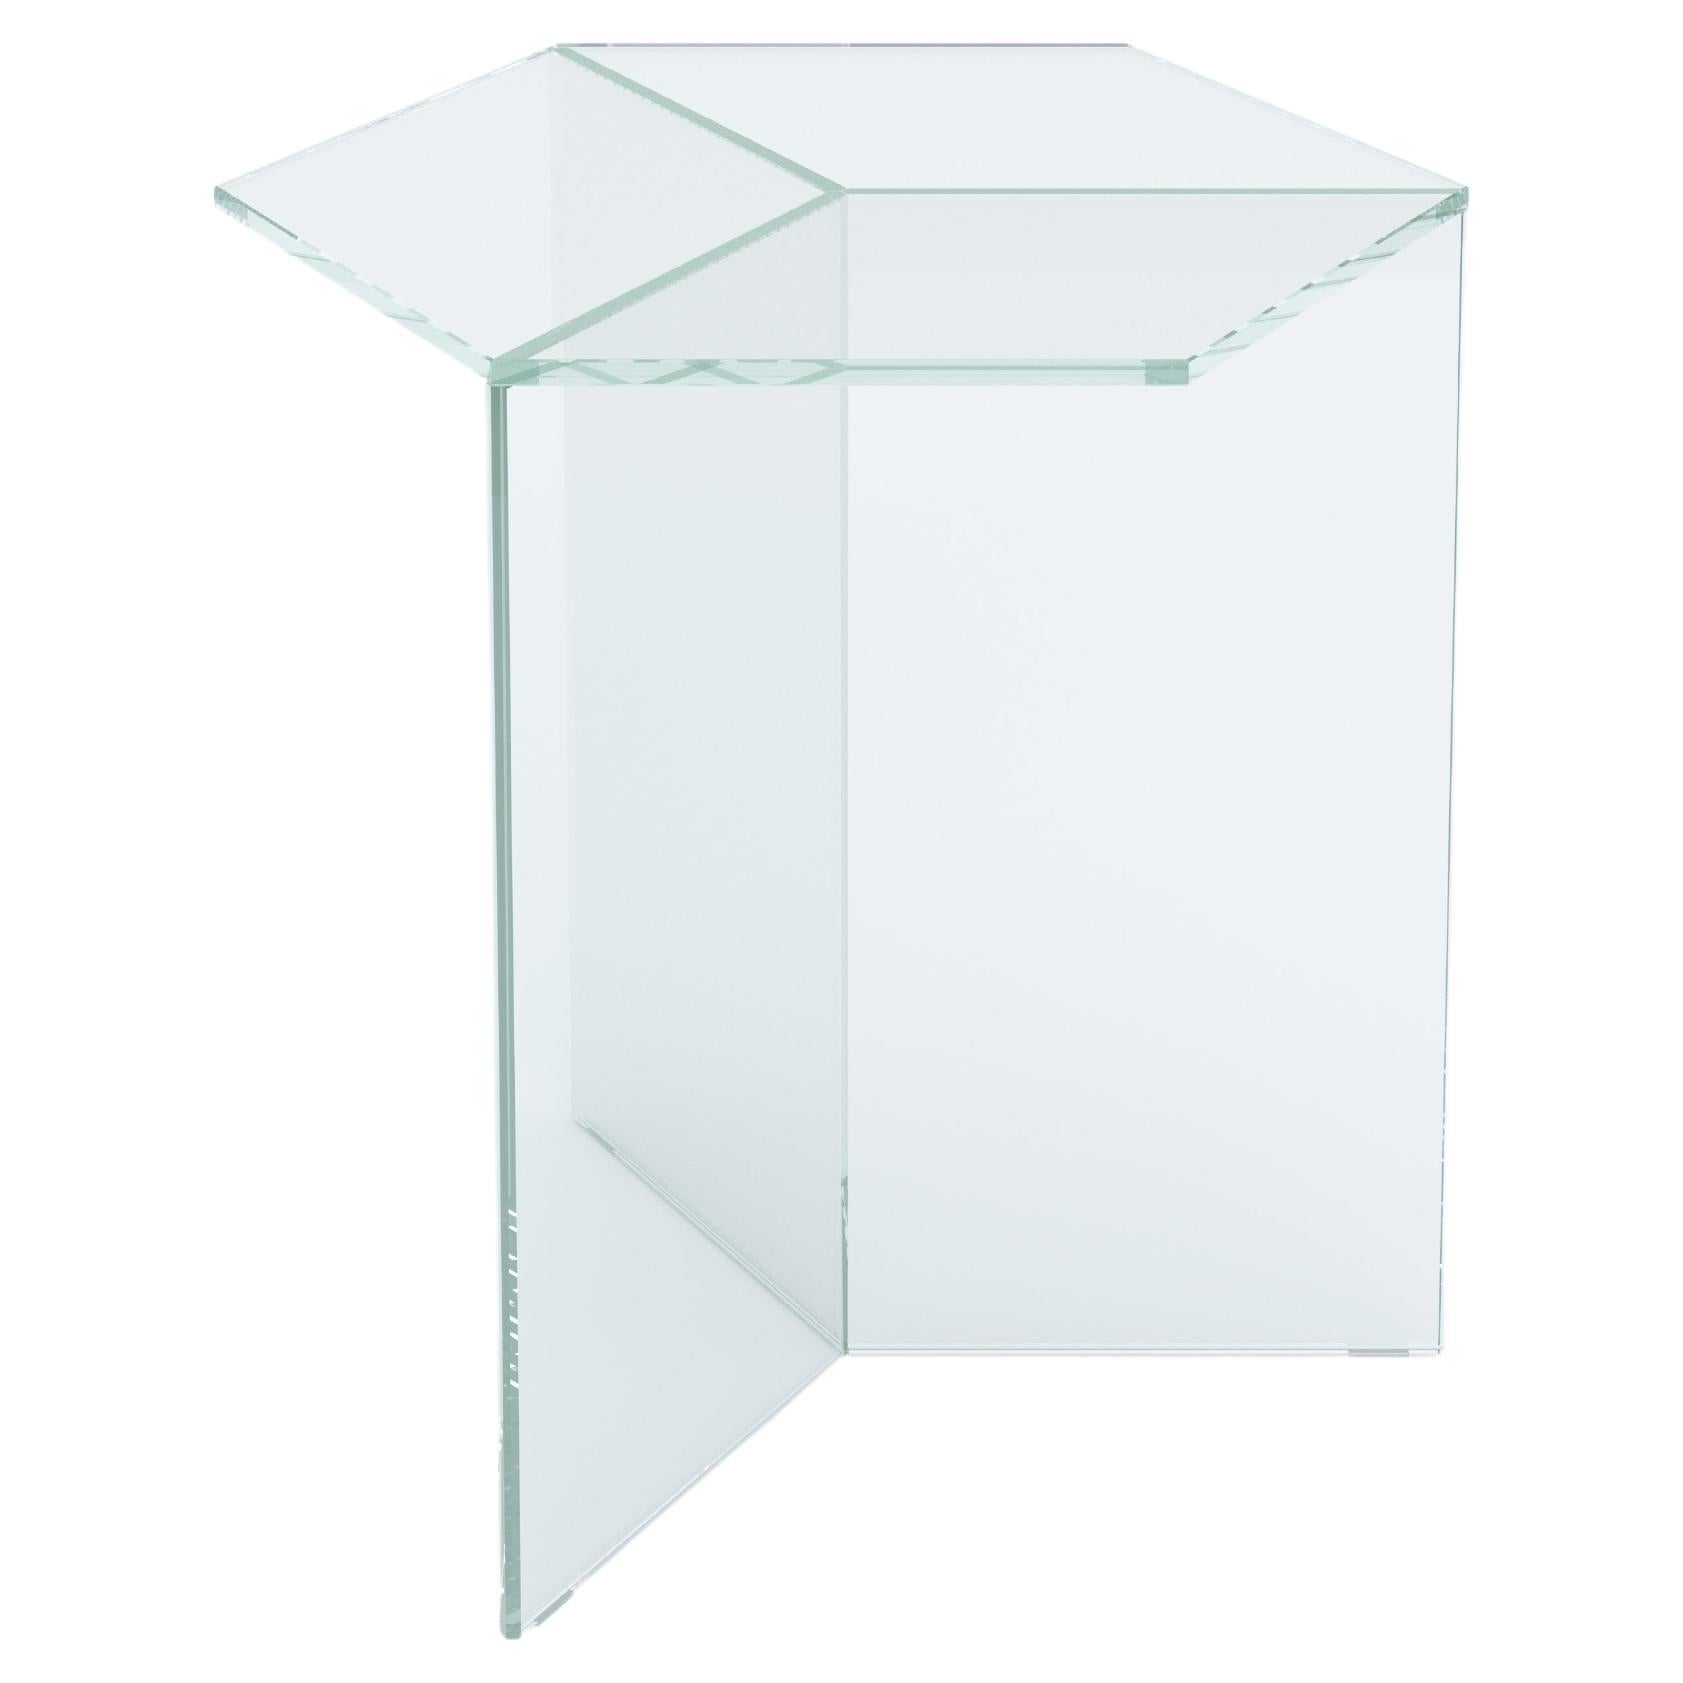 Isom Tall 50 cm Side Table Clear Glass White, Sebastian Scherer for Neo/Craft